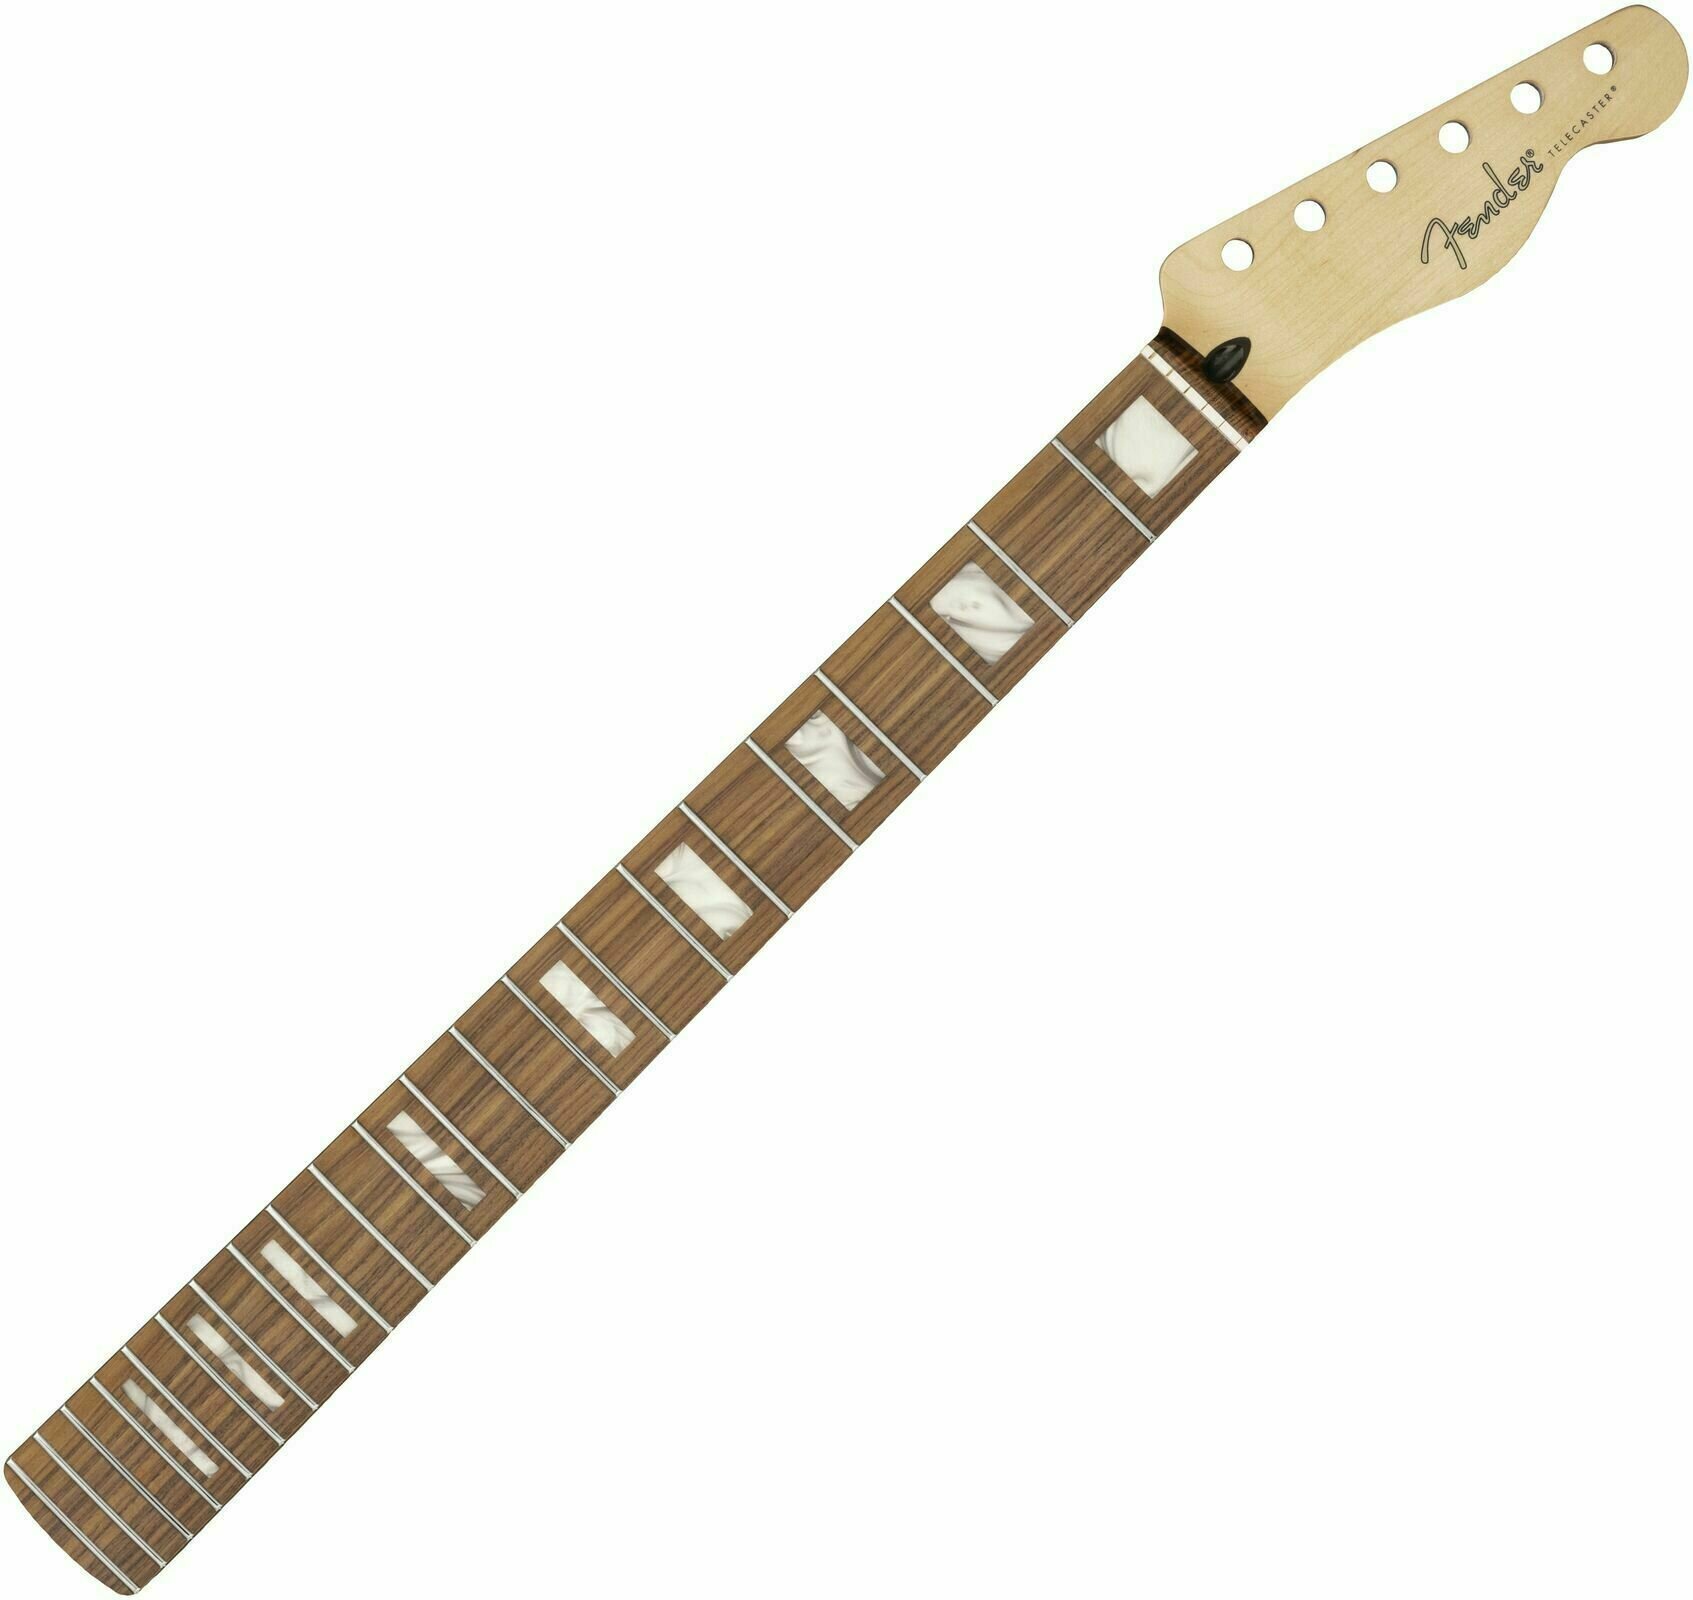 Hals für Gitarre Fender Player Series Telecaster Neck Block Inlays Pau Ferro 22 Pau Ferro Hals für Gitarre